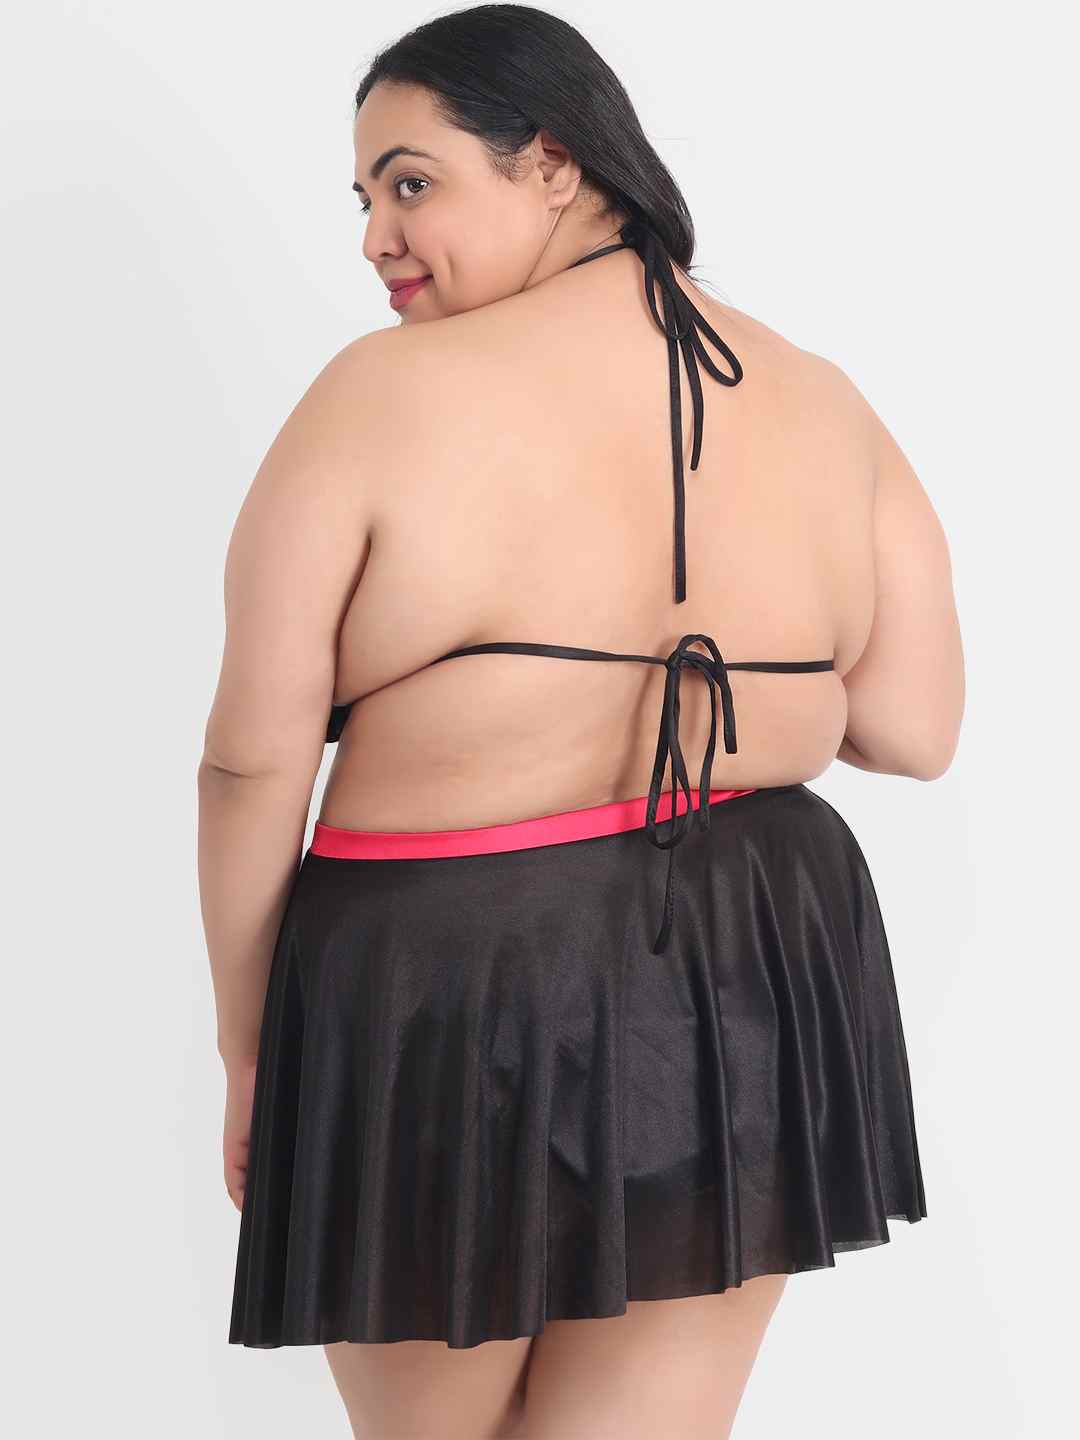 Plus Size Sexy 3 Piece Babydoll Bikini Dress for Honeymoon 202K